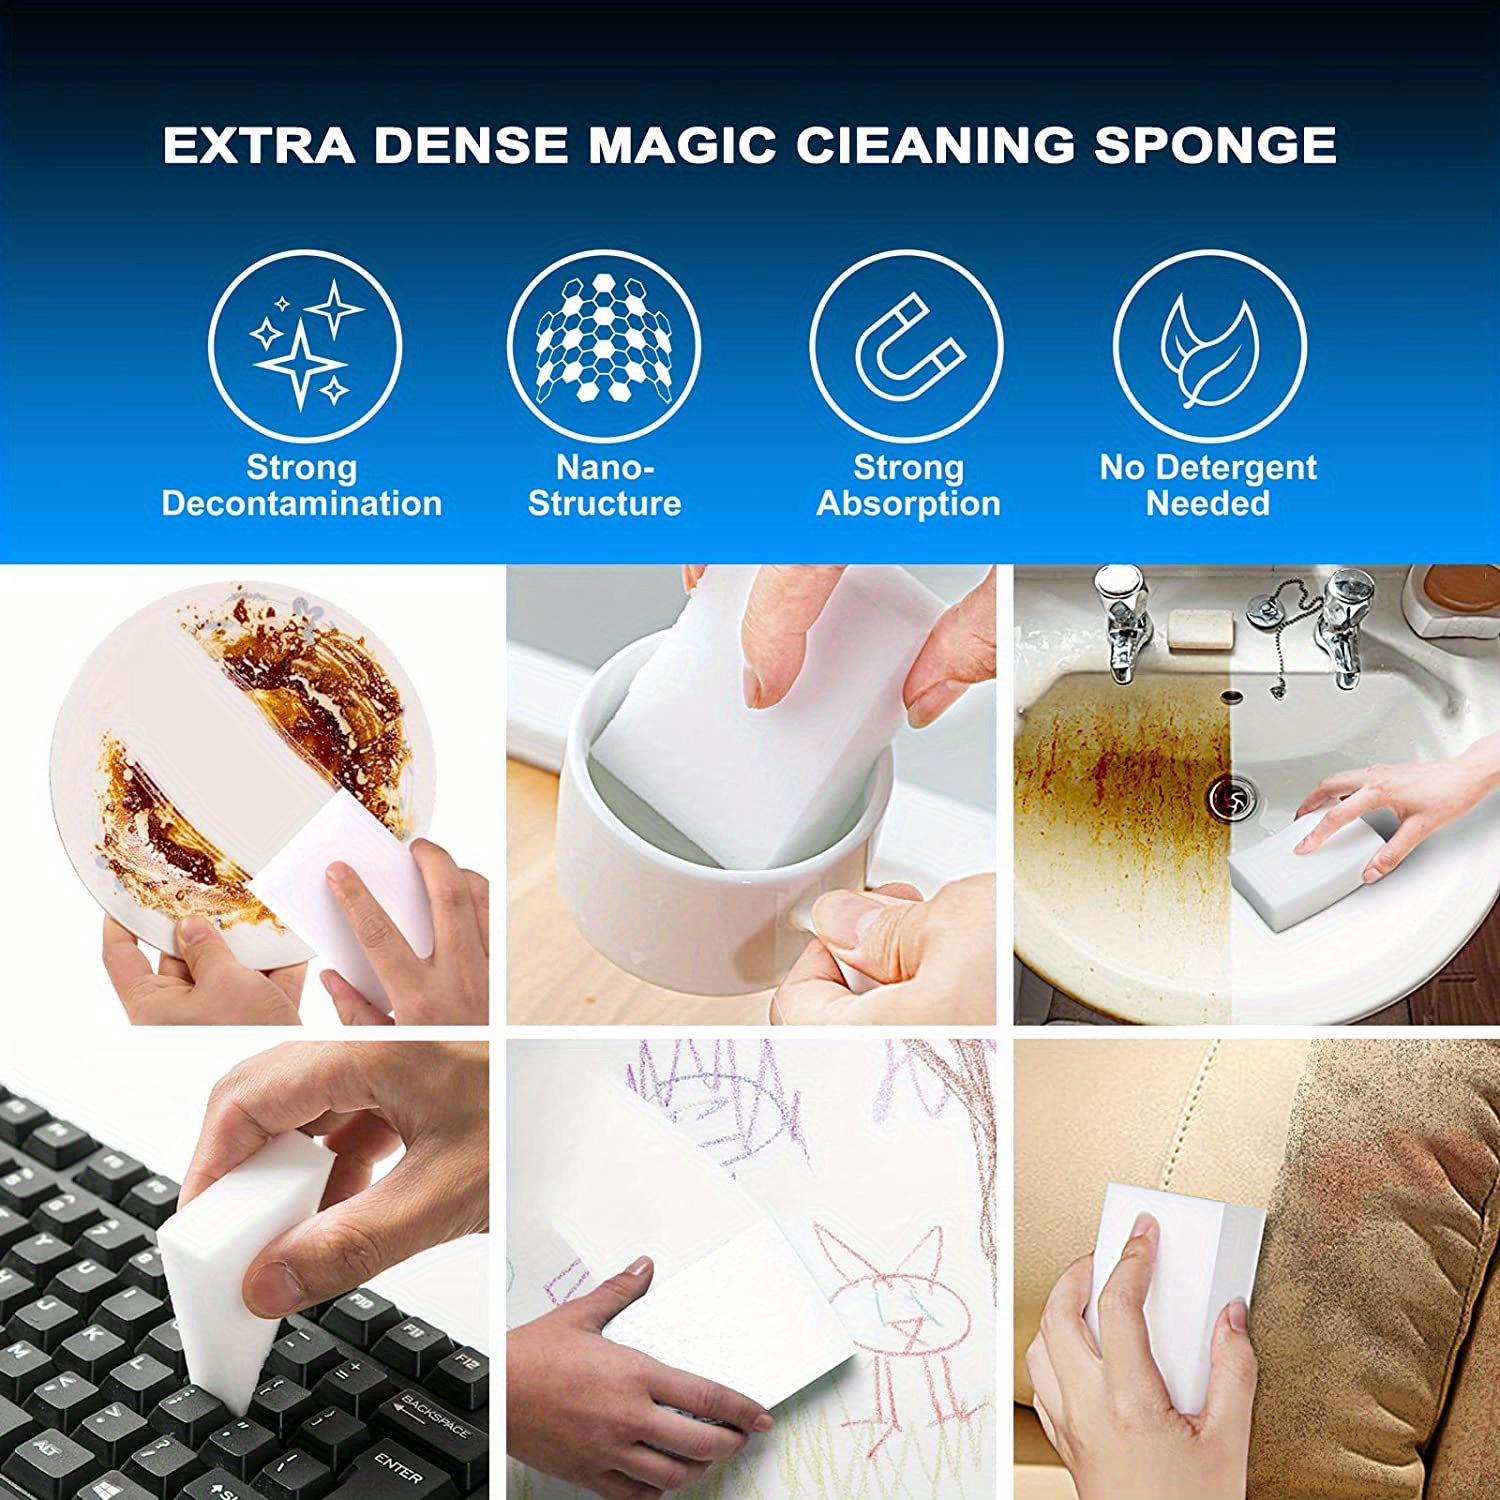 Esponja mágica de Foamworld – Simplemente limpia cualquier mancha con agua  – Espuma de melamina para platos y limpieza del hogar – Paquete de 50